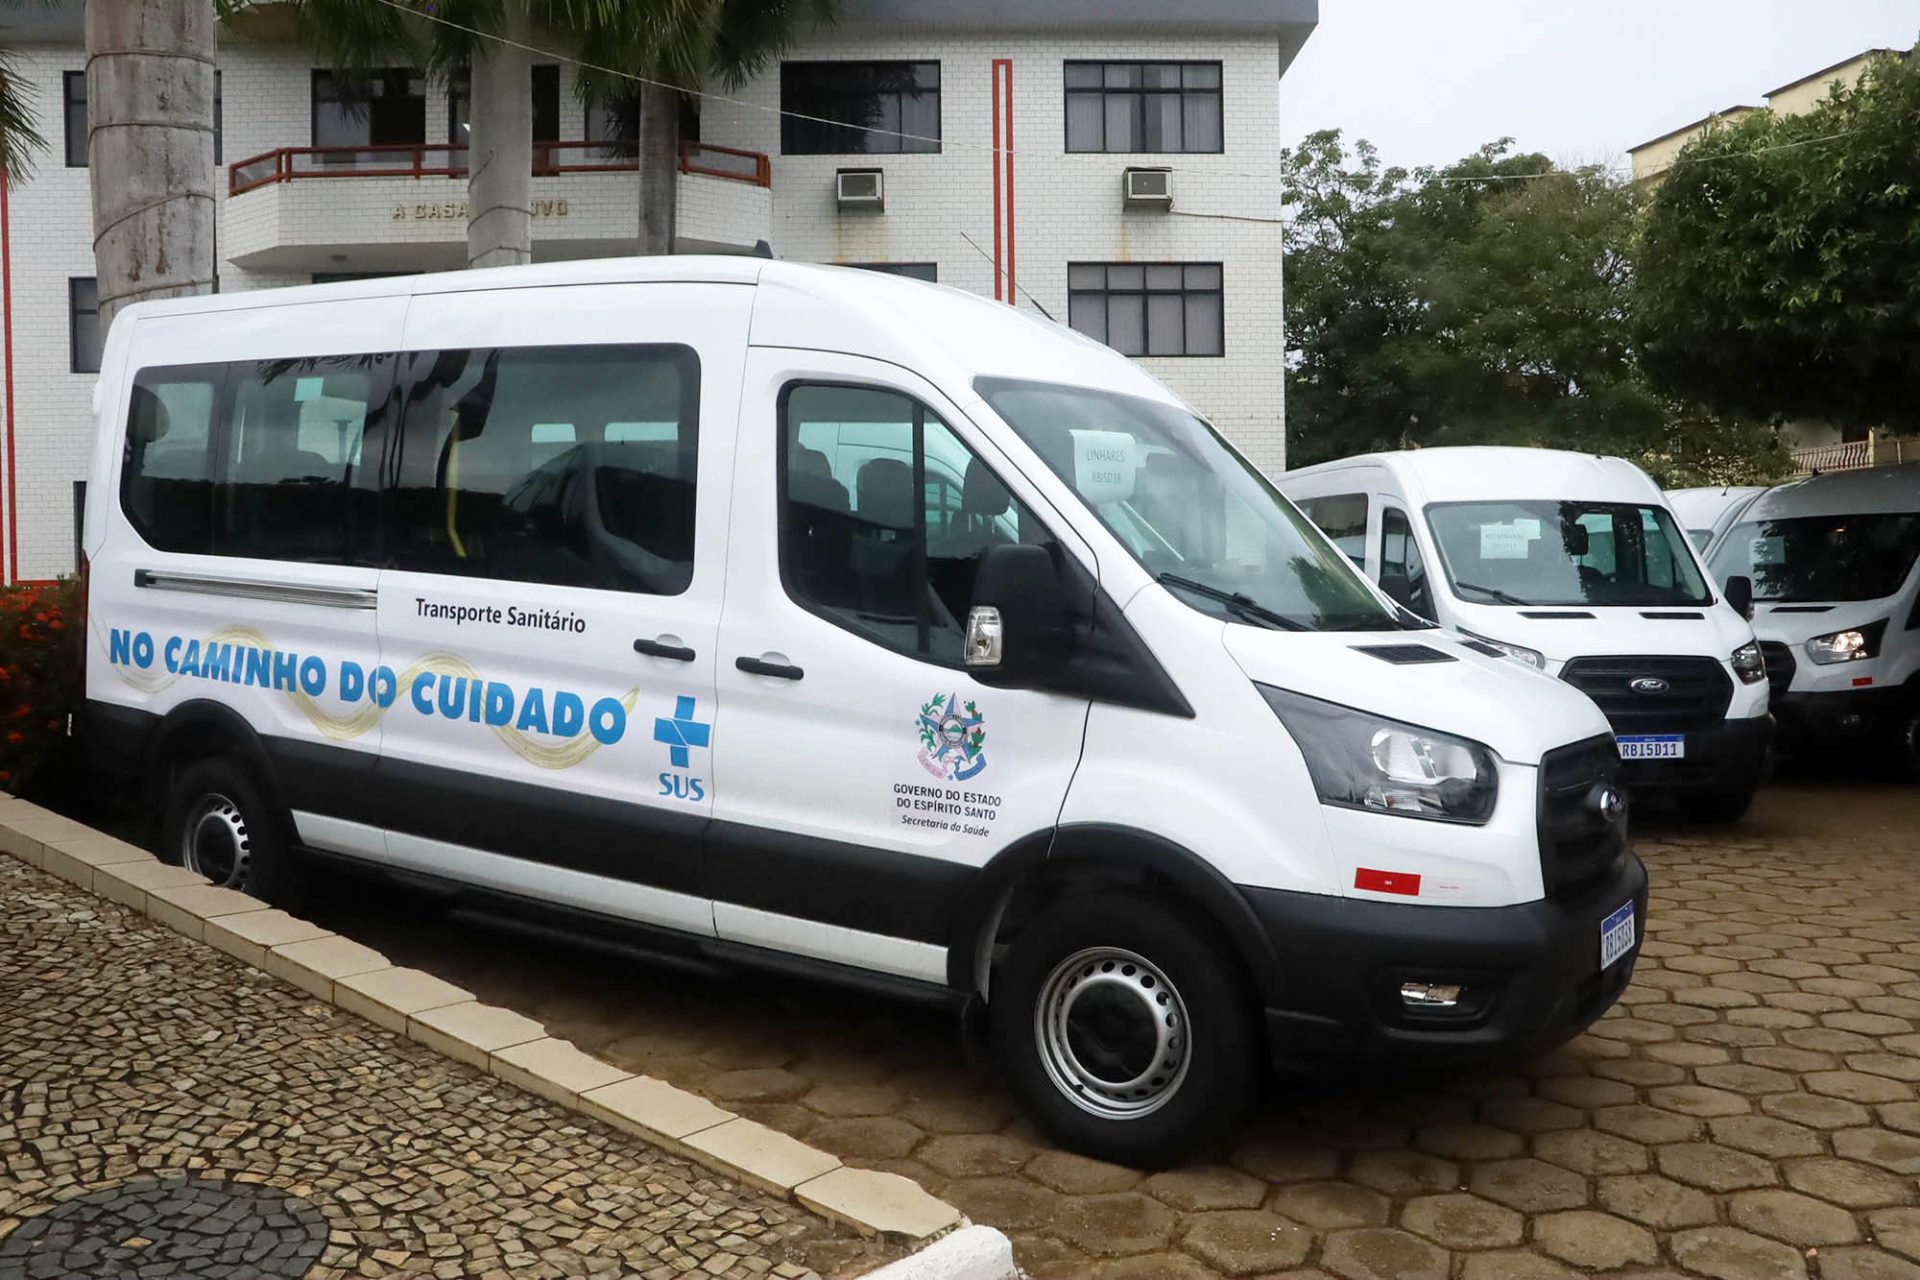 Municípios das microrregiões Rio Doce, Centro-Oeste e Noroeste recebem equipamentos e vans para transporte sanitário